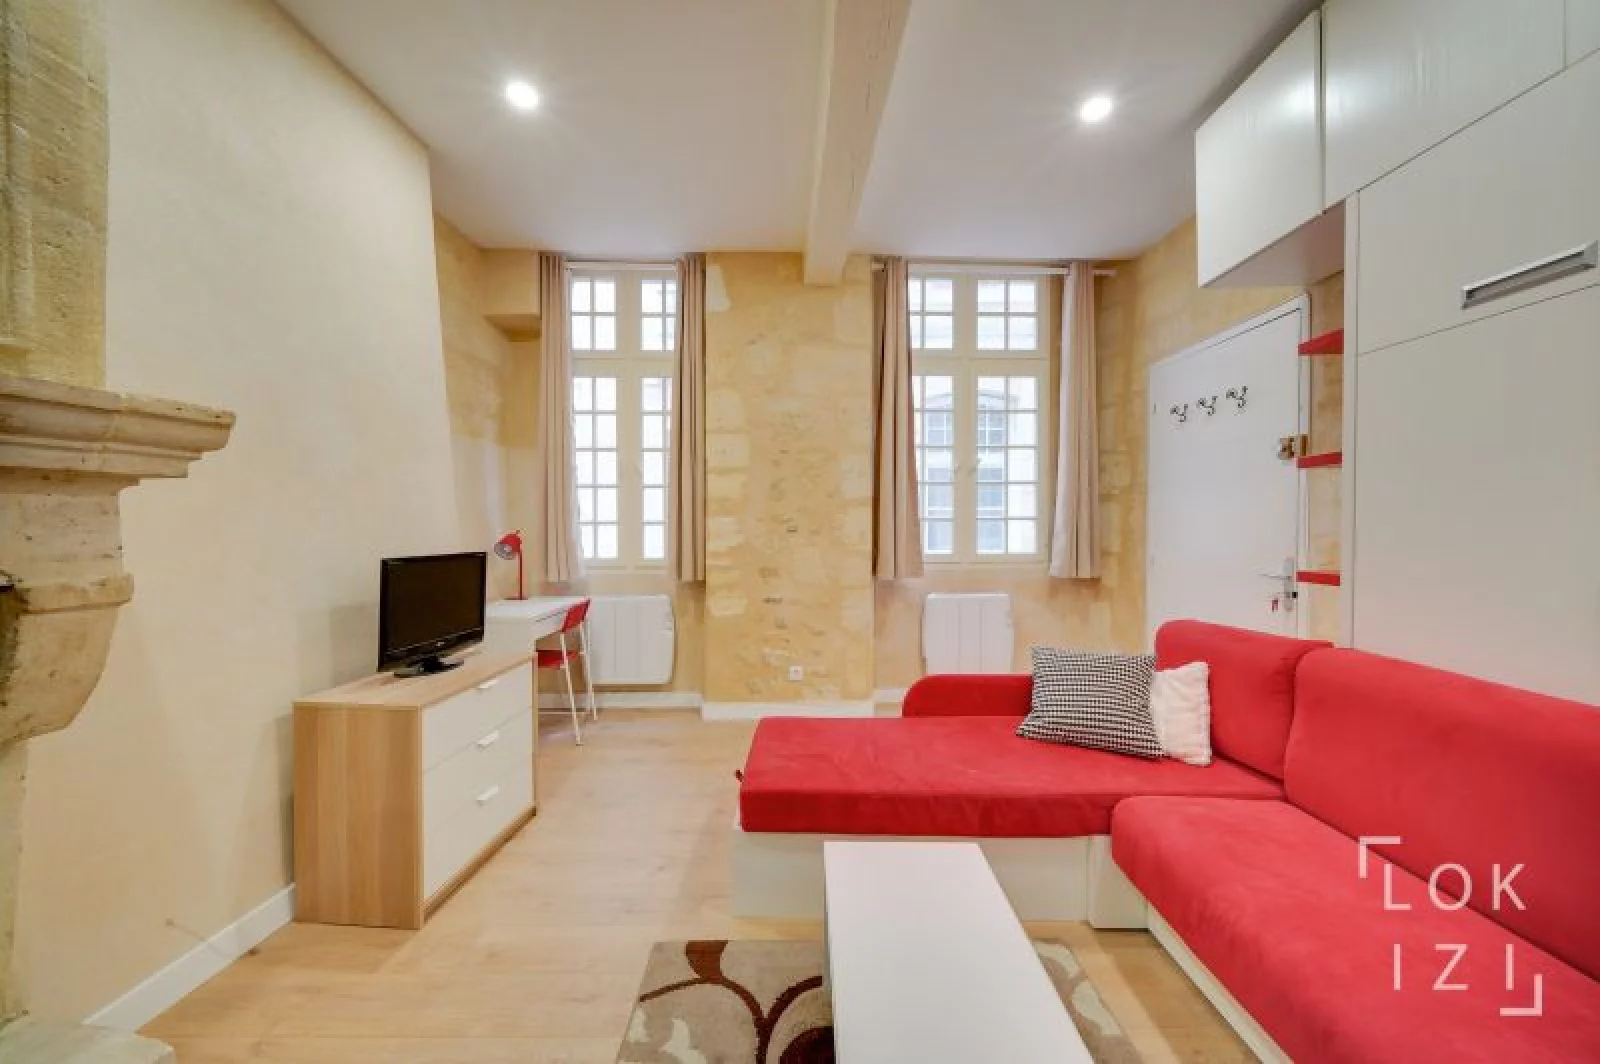 Location studio meublé 26m² (Bordeaux centre - Victor Hugo)